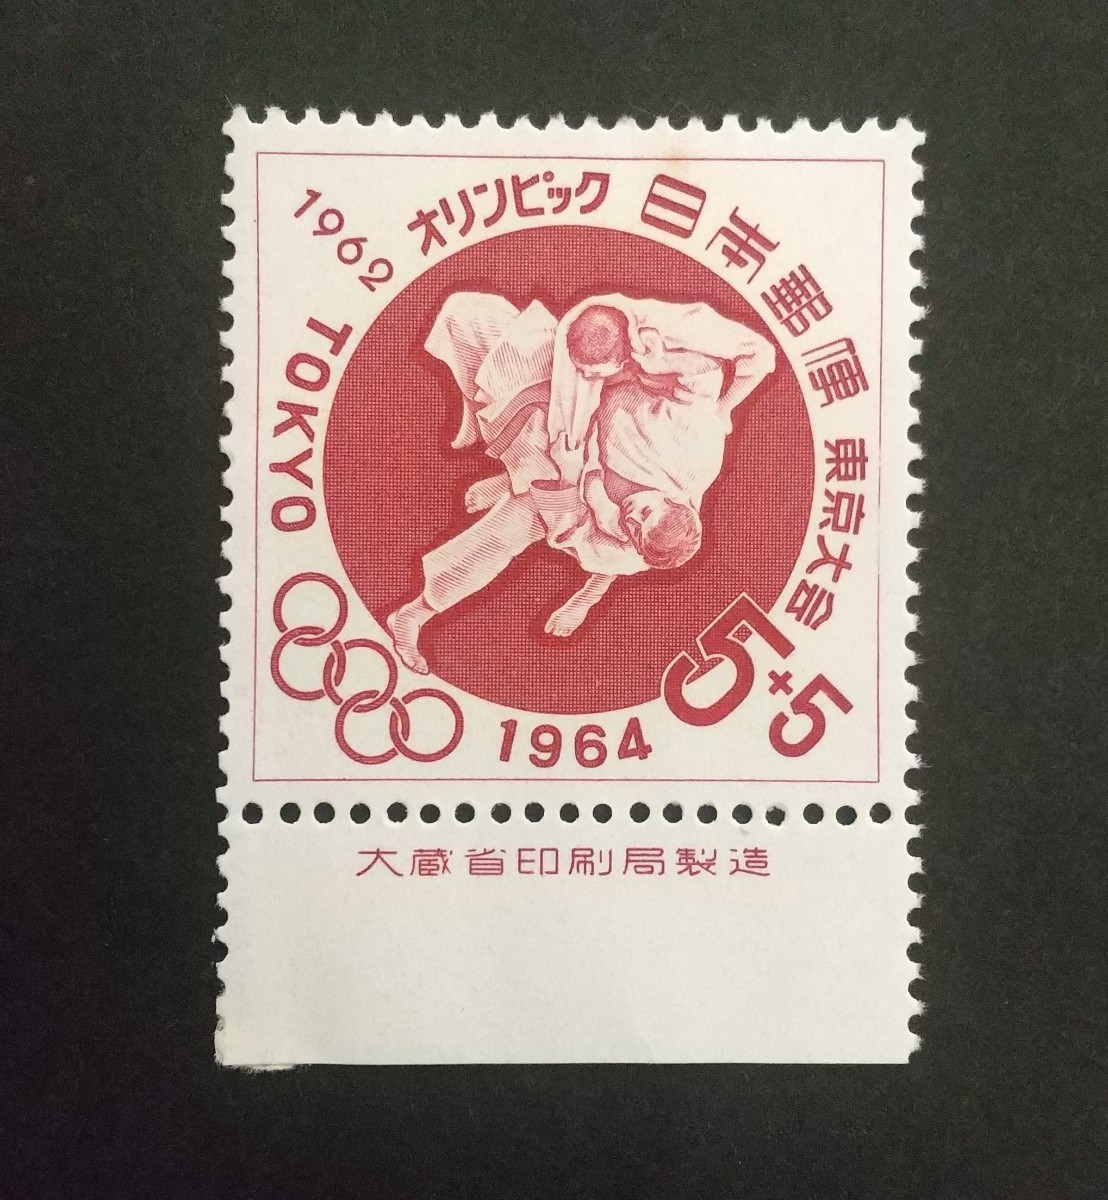 記念切手 東京オリンピック 寄附金付柔道 1962 大蔵省銘板付き 未使用品 (ST-10)の画像1